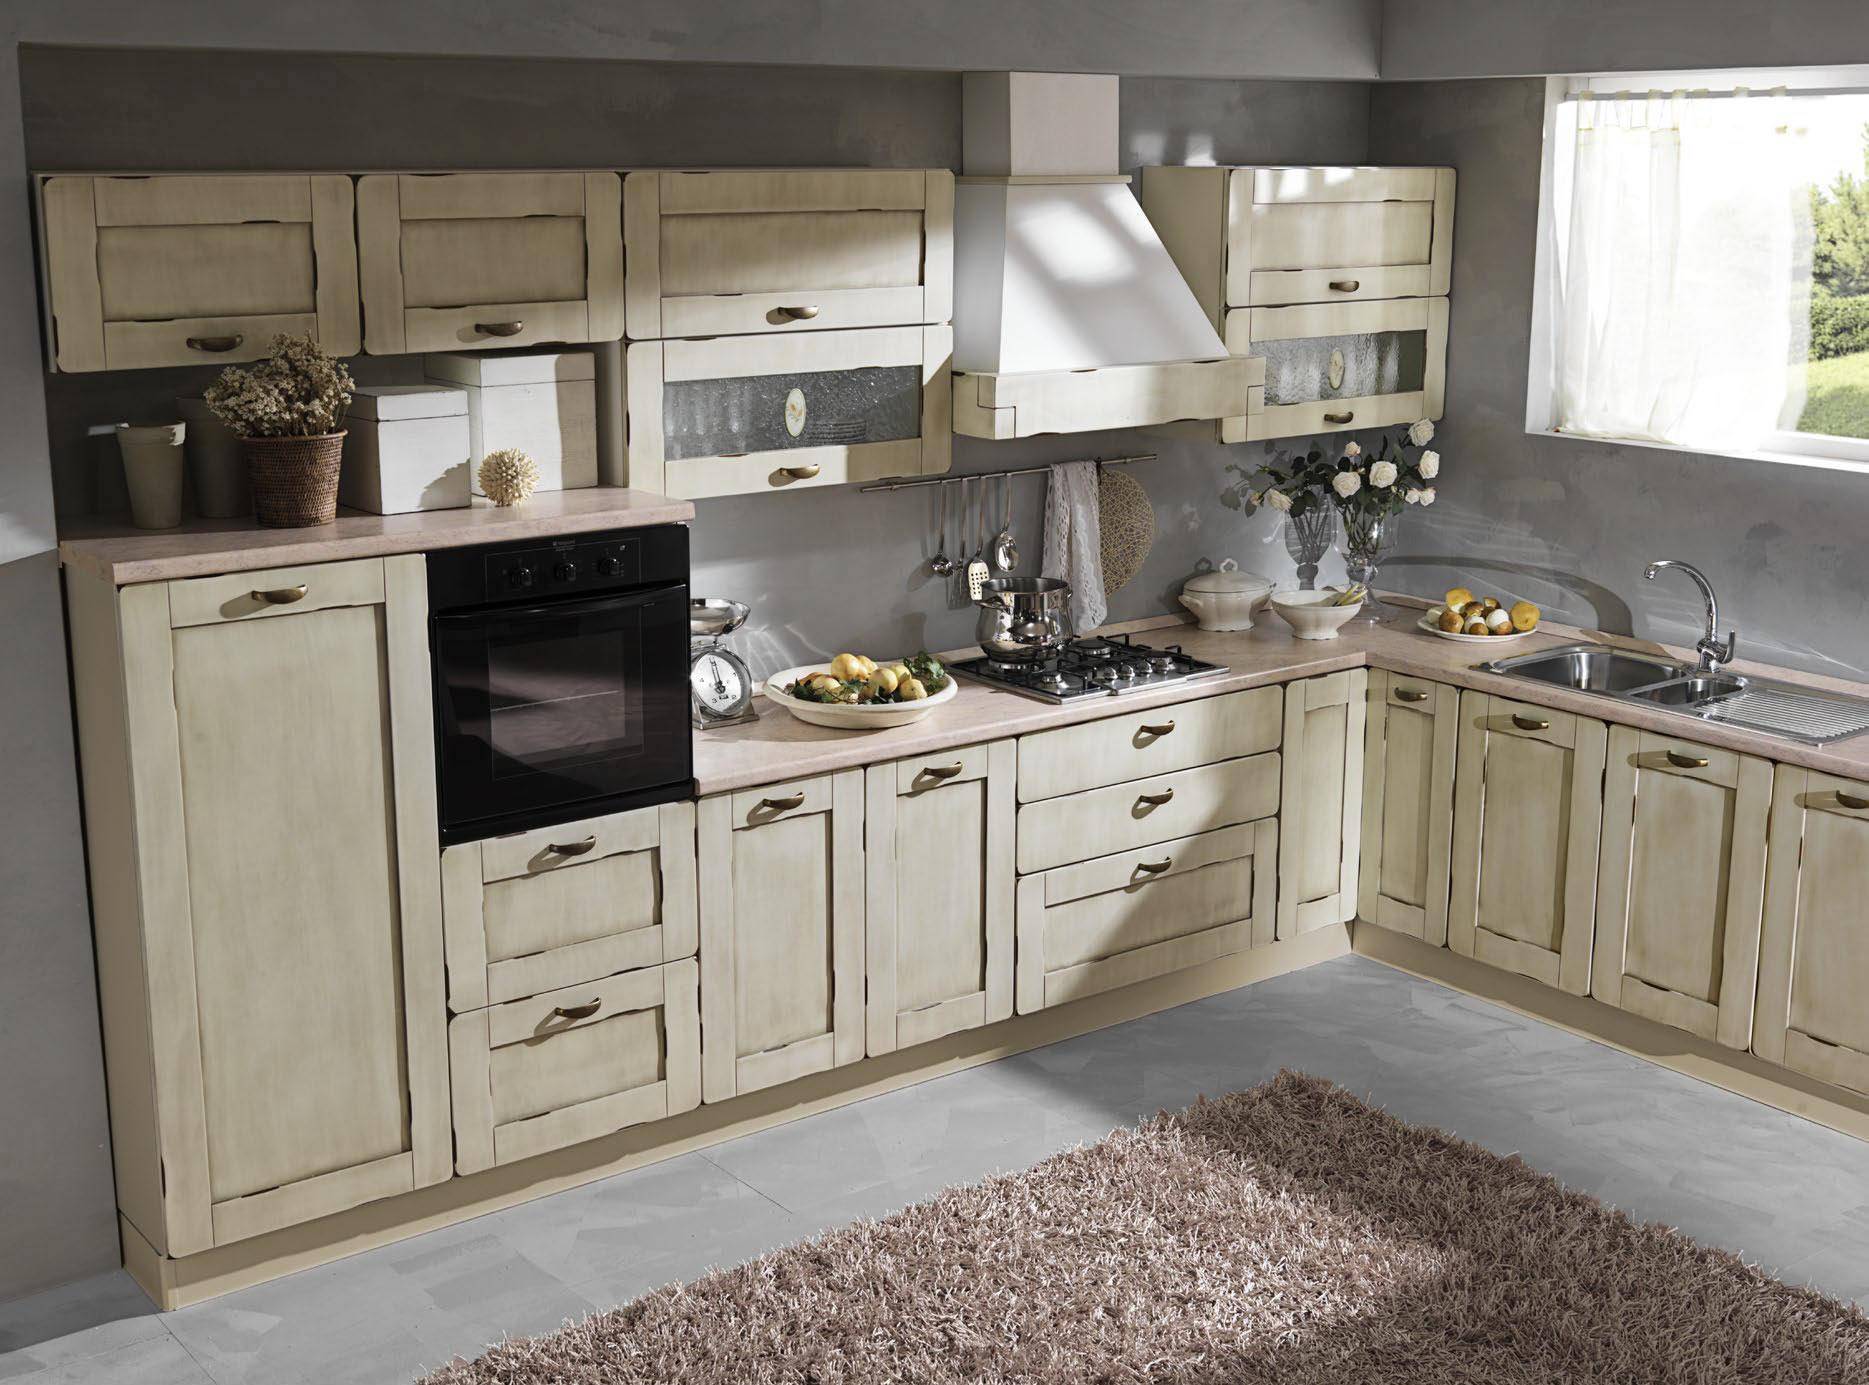 意大利gieffe橱柜,意式轻奢厨房的世界级设计代表,探寻以人为本